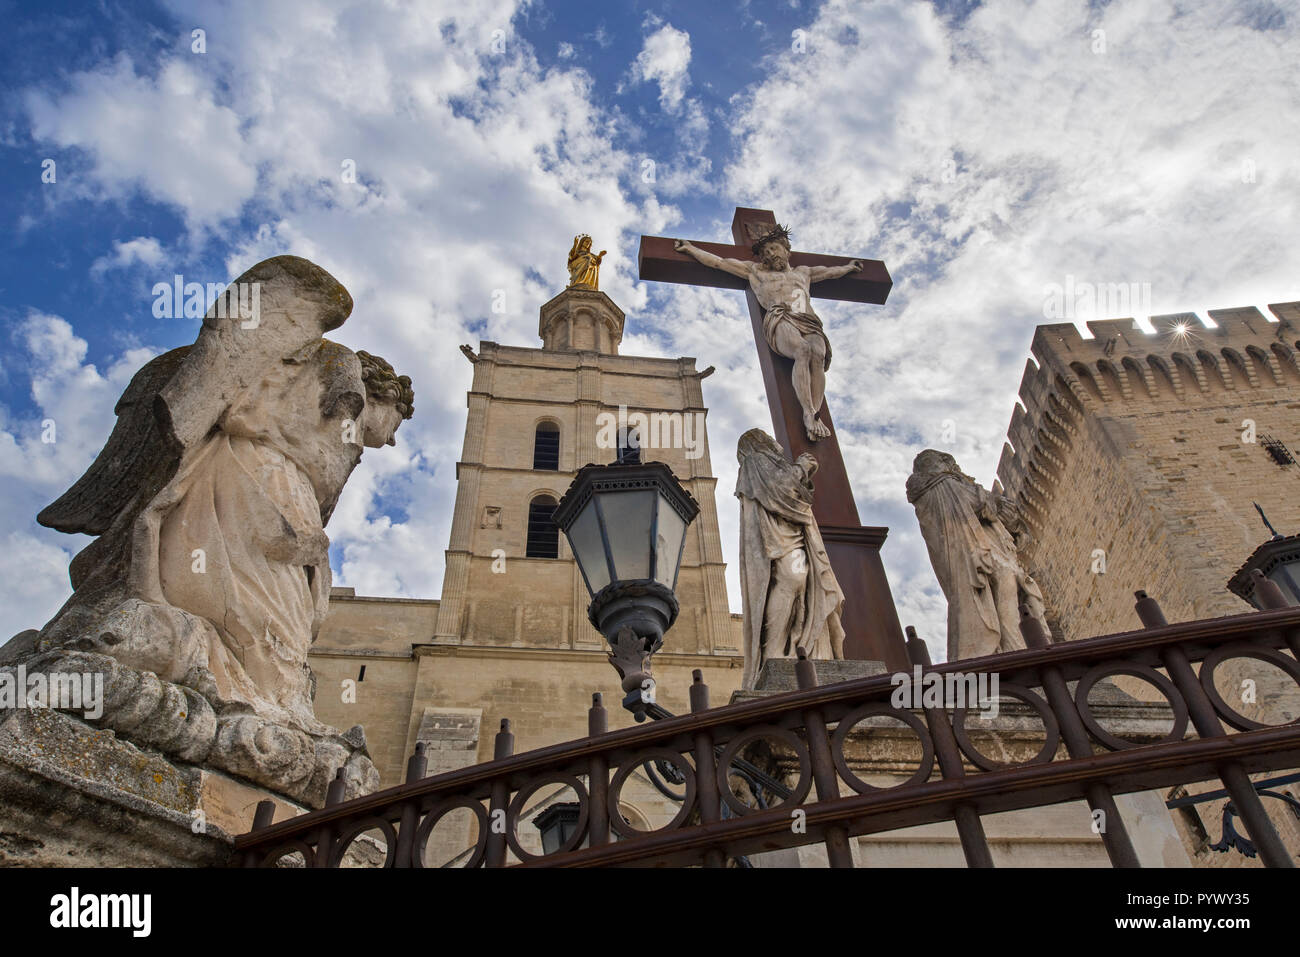 Les sculptures d'anges, crucifix et statue dorée de la Vierge Marie à Cathédrale Notre-Dame des Doms d'Avignon / Avignon Cathédrale, Vaucluse, France Banque D'Images